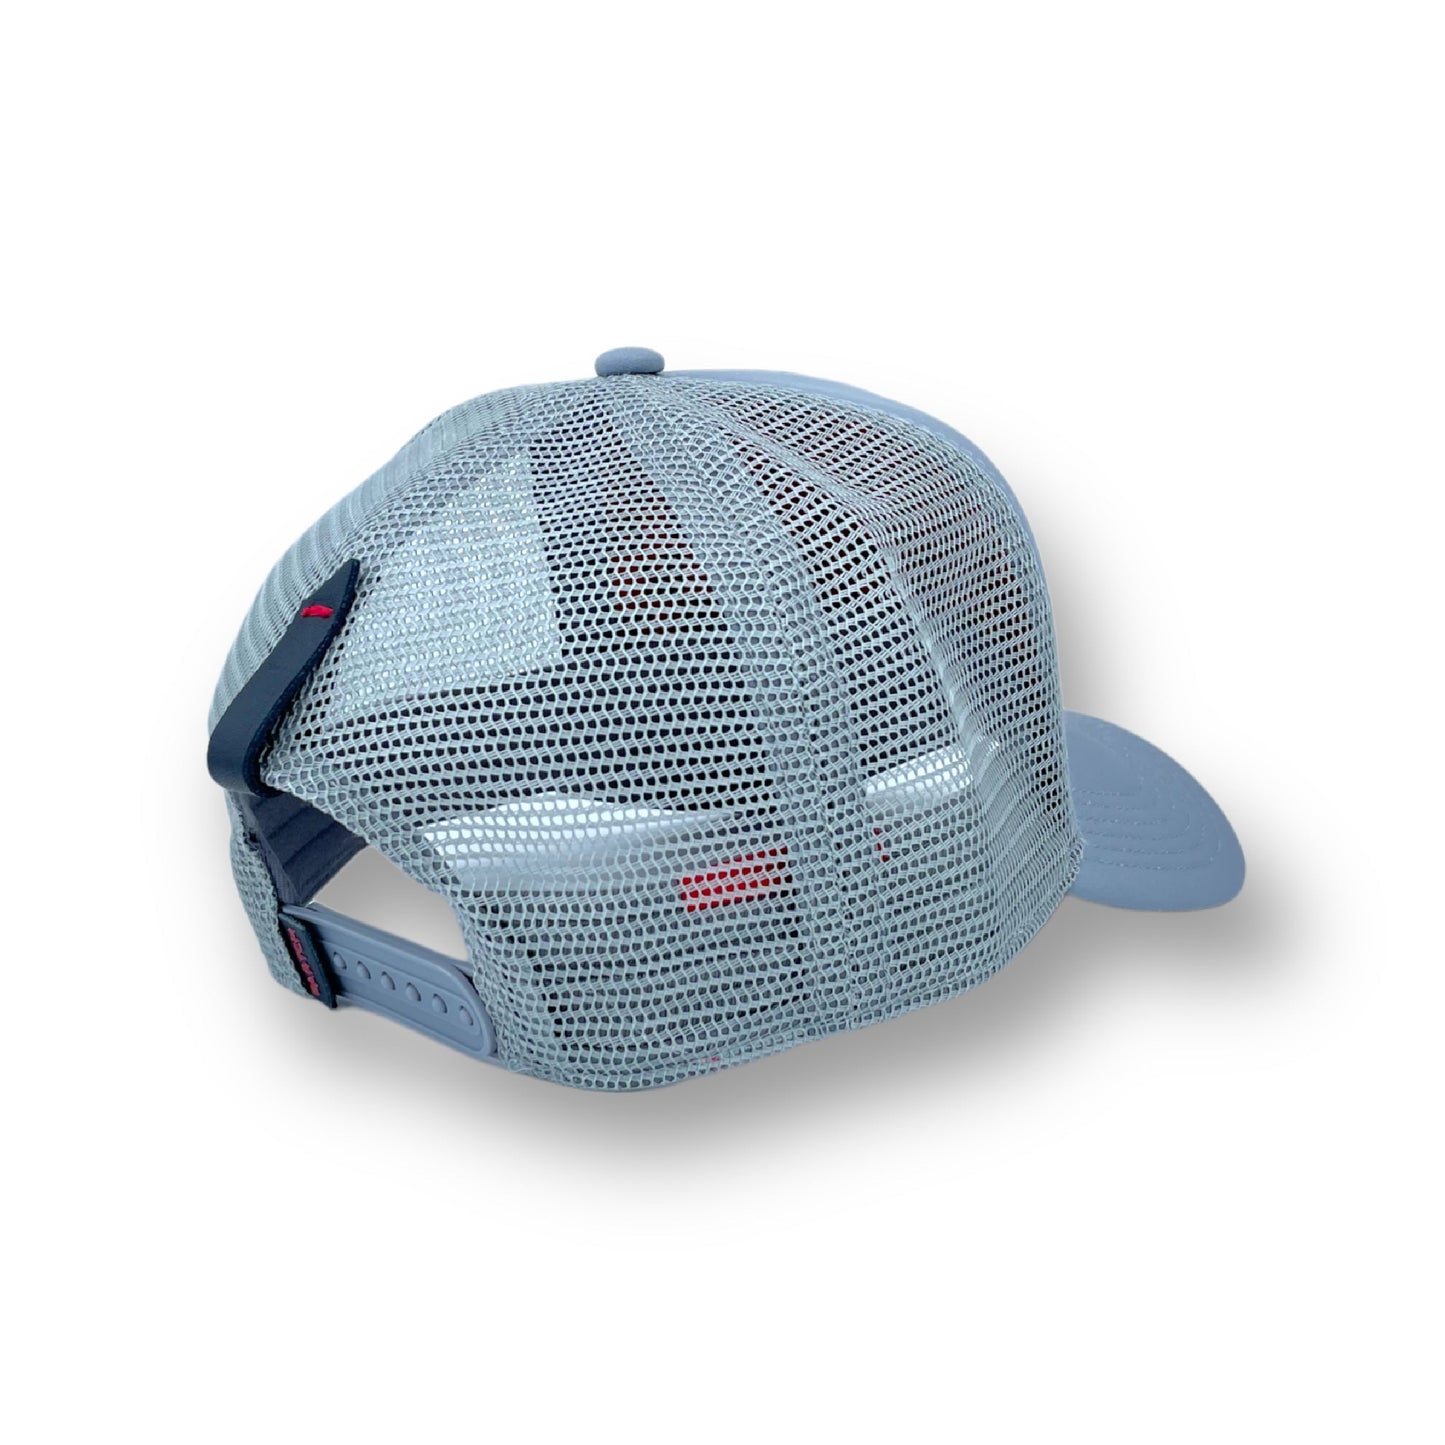 Partch Luxury Fashion Gray Trucker Hat